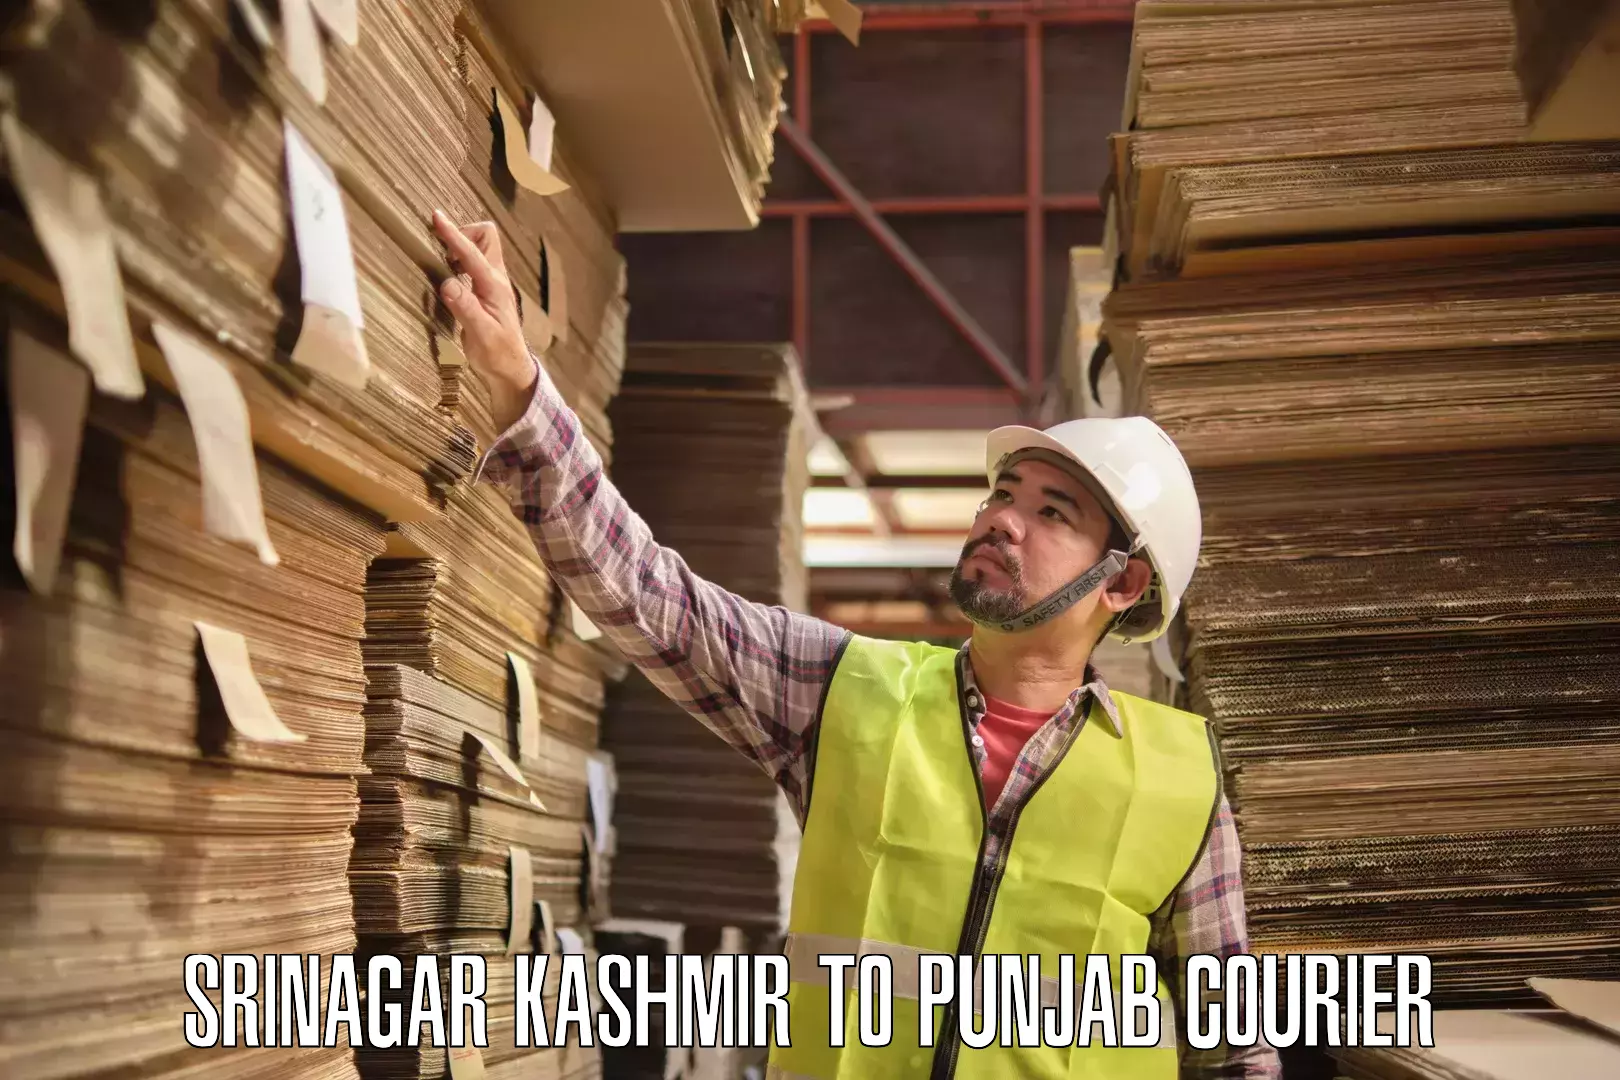 Cargo delivery service Srinagar Kashmir to Jalandhar